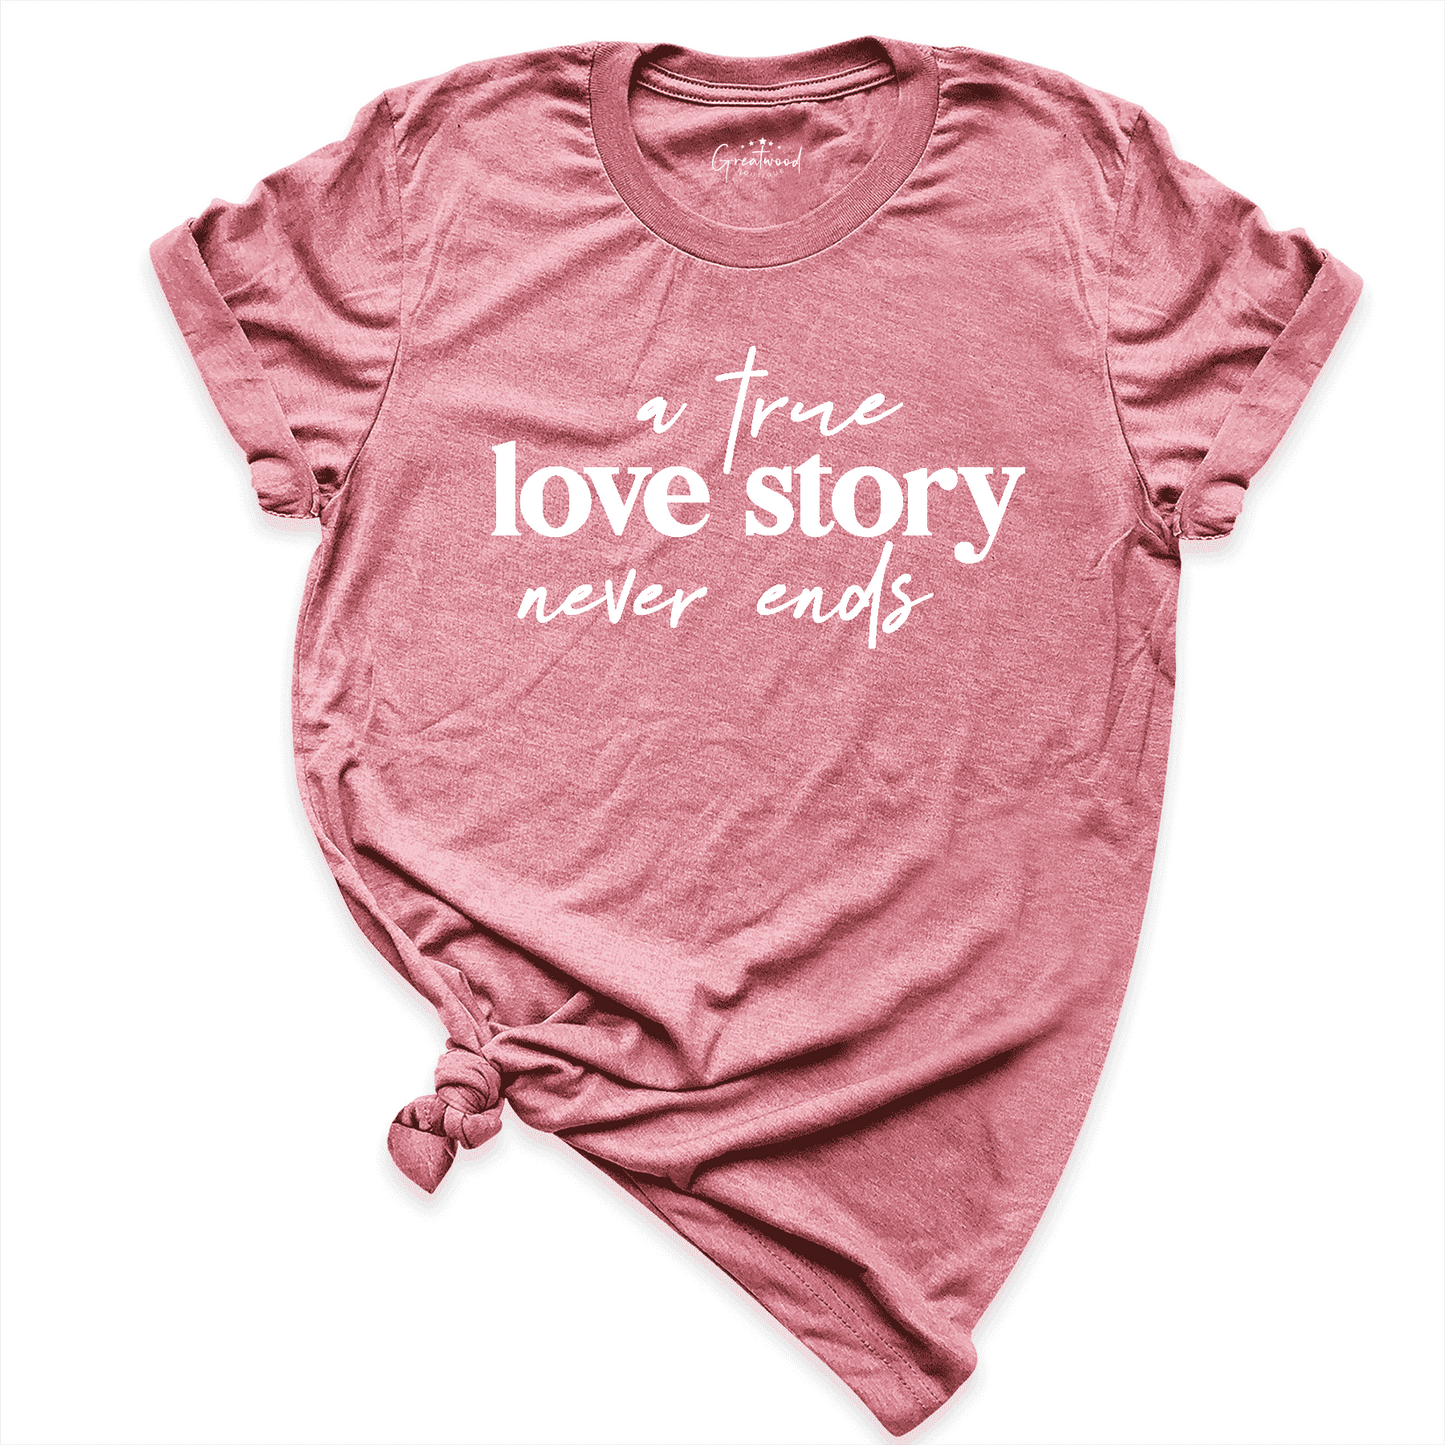 A True Love Story Shirt